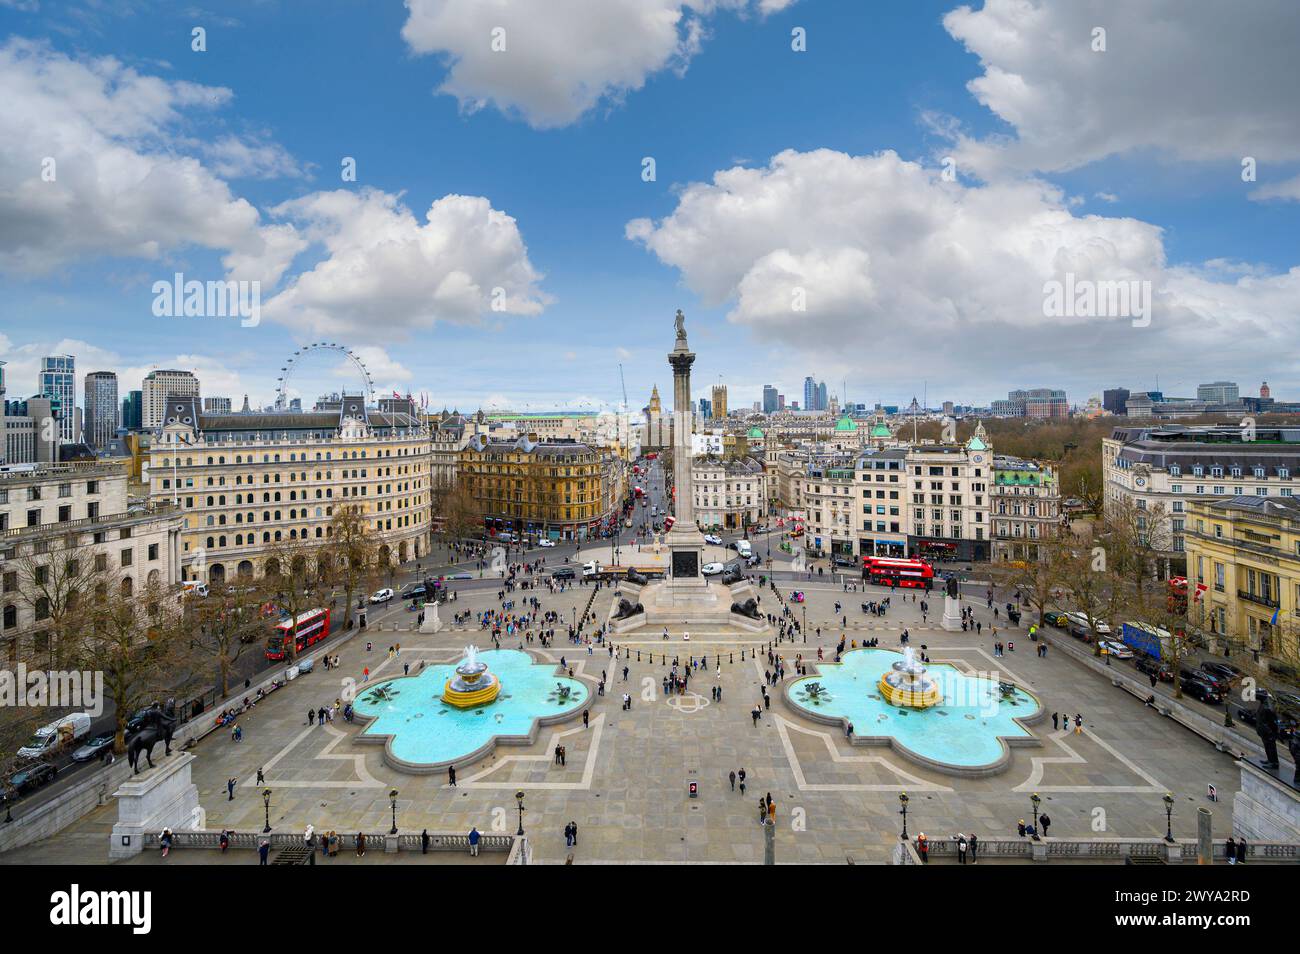 Blick aus der Vogelperspektive auf Londons berühmten Trafalgar Square von der National Gallery, London, England. Stockfoto